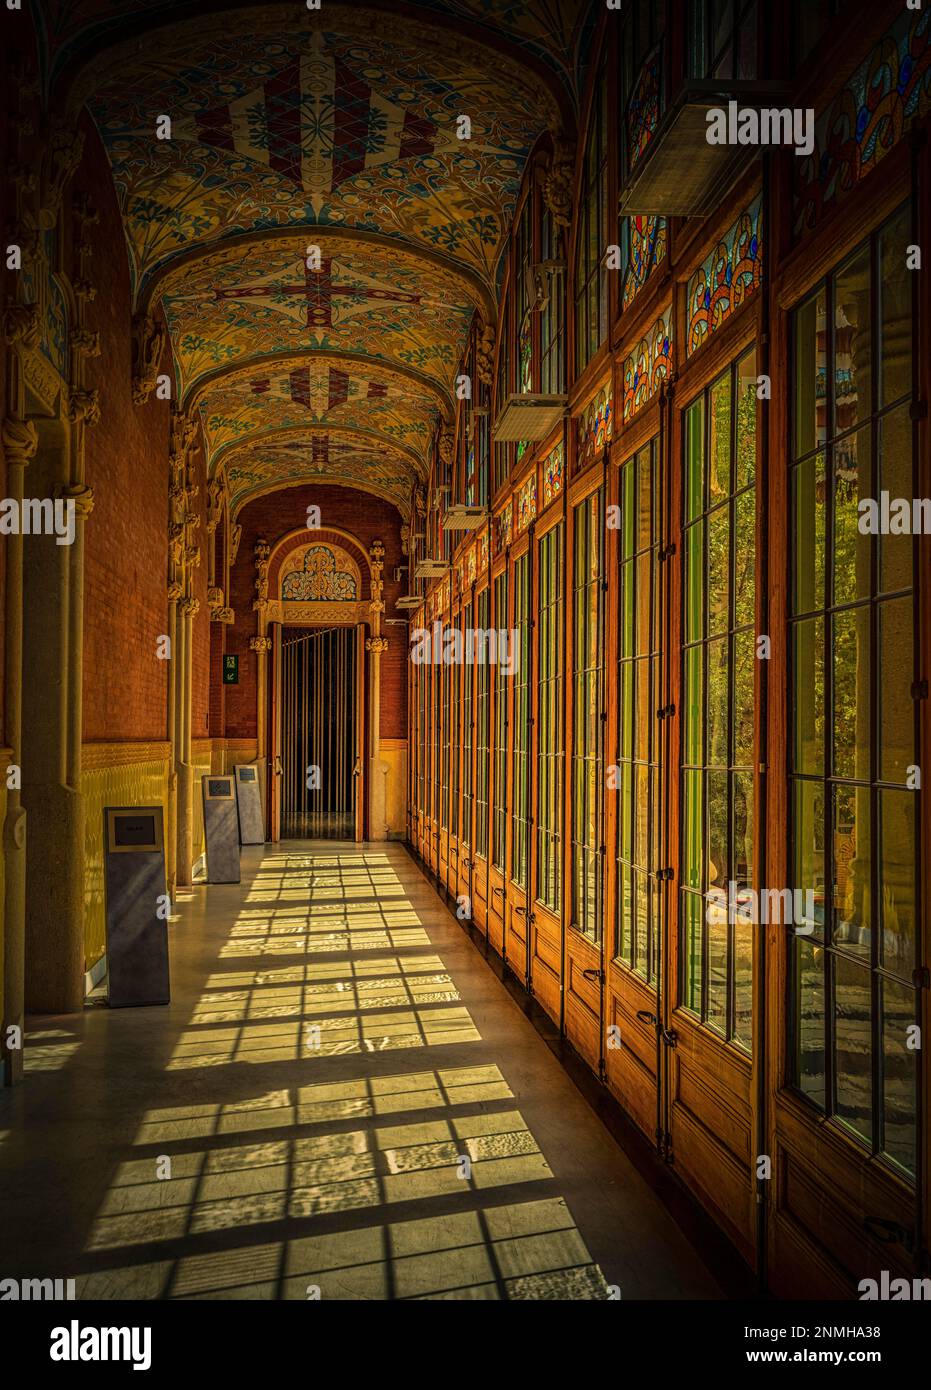 Bildverarbeitung, Innenansicht der Halle und Korridore im Hauptgebäude des Hospital de la Santa Creu i Sant Pau vom Architekten Lluis Stockfoto